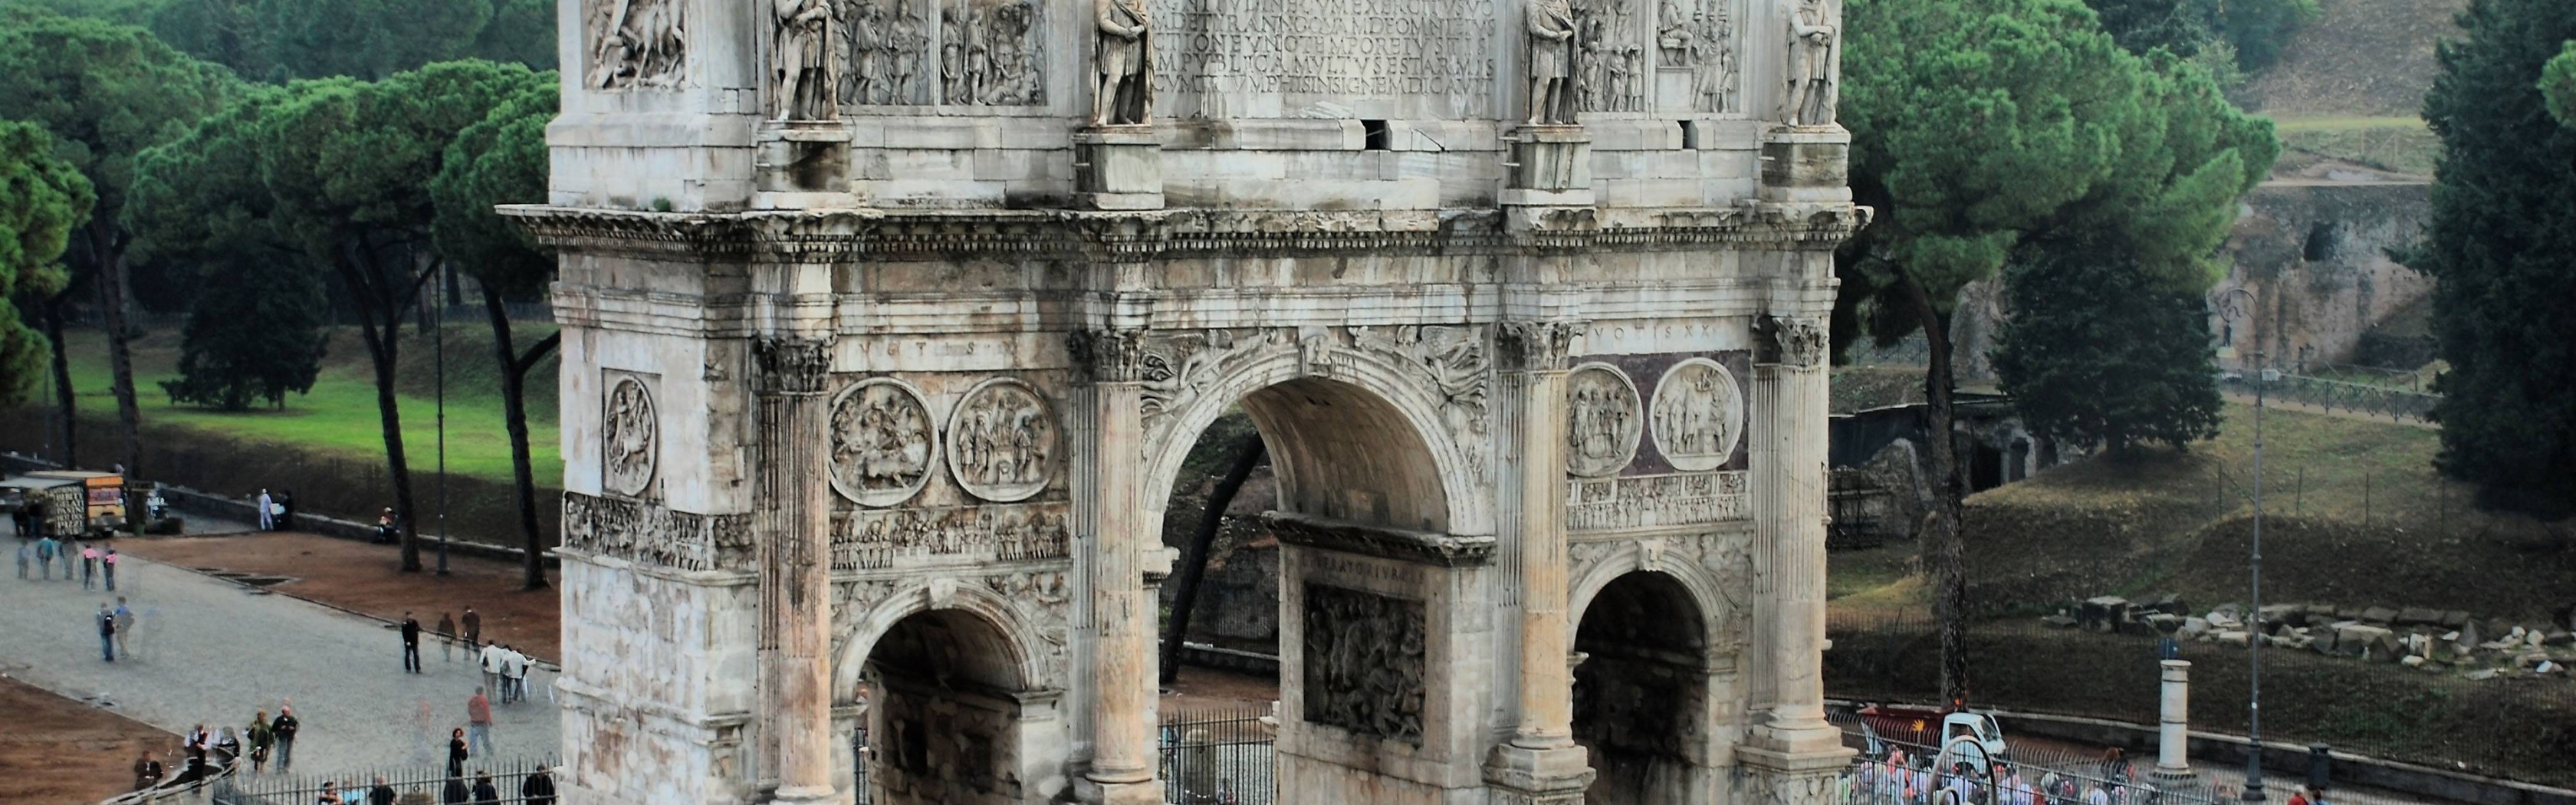 Arco de Constantino 3360x1050